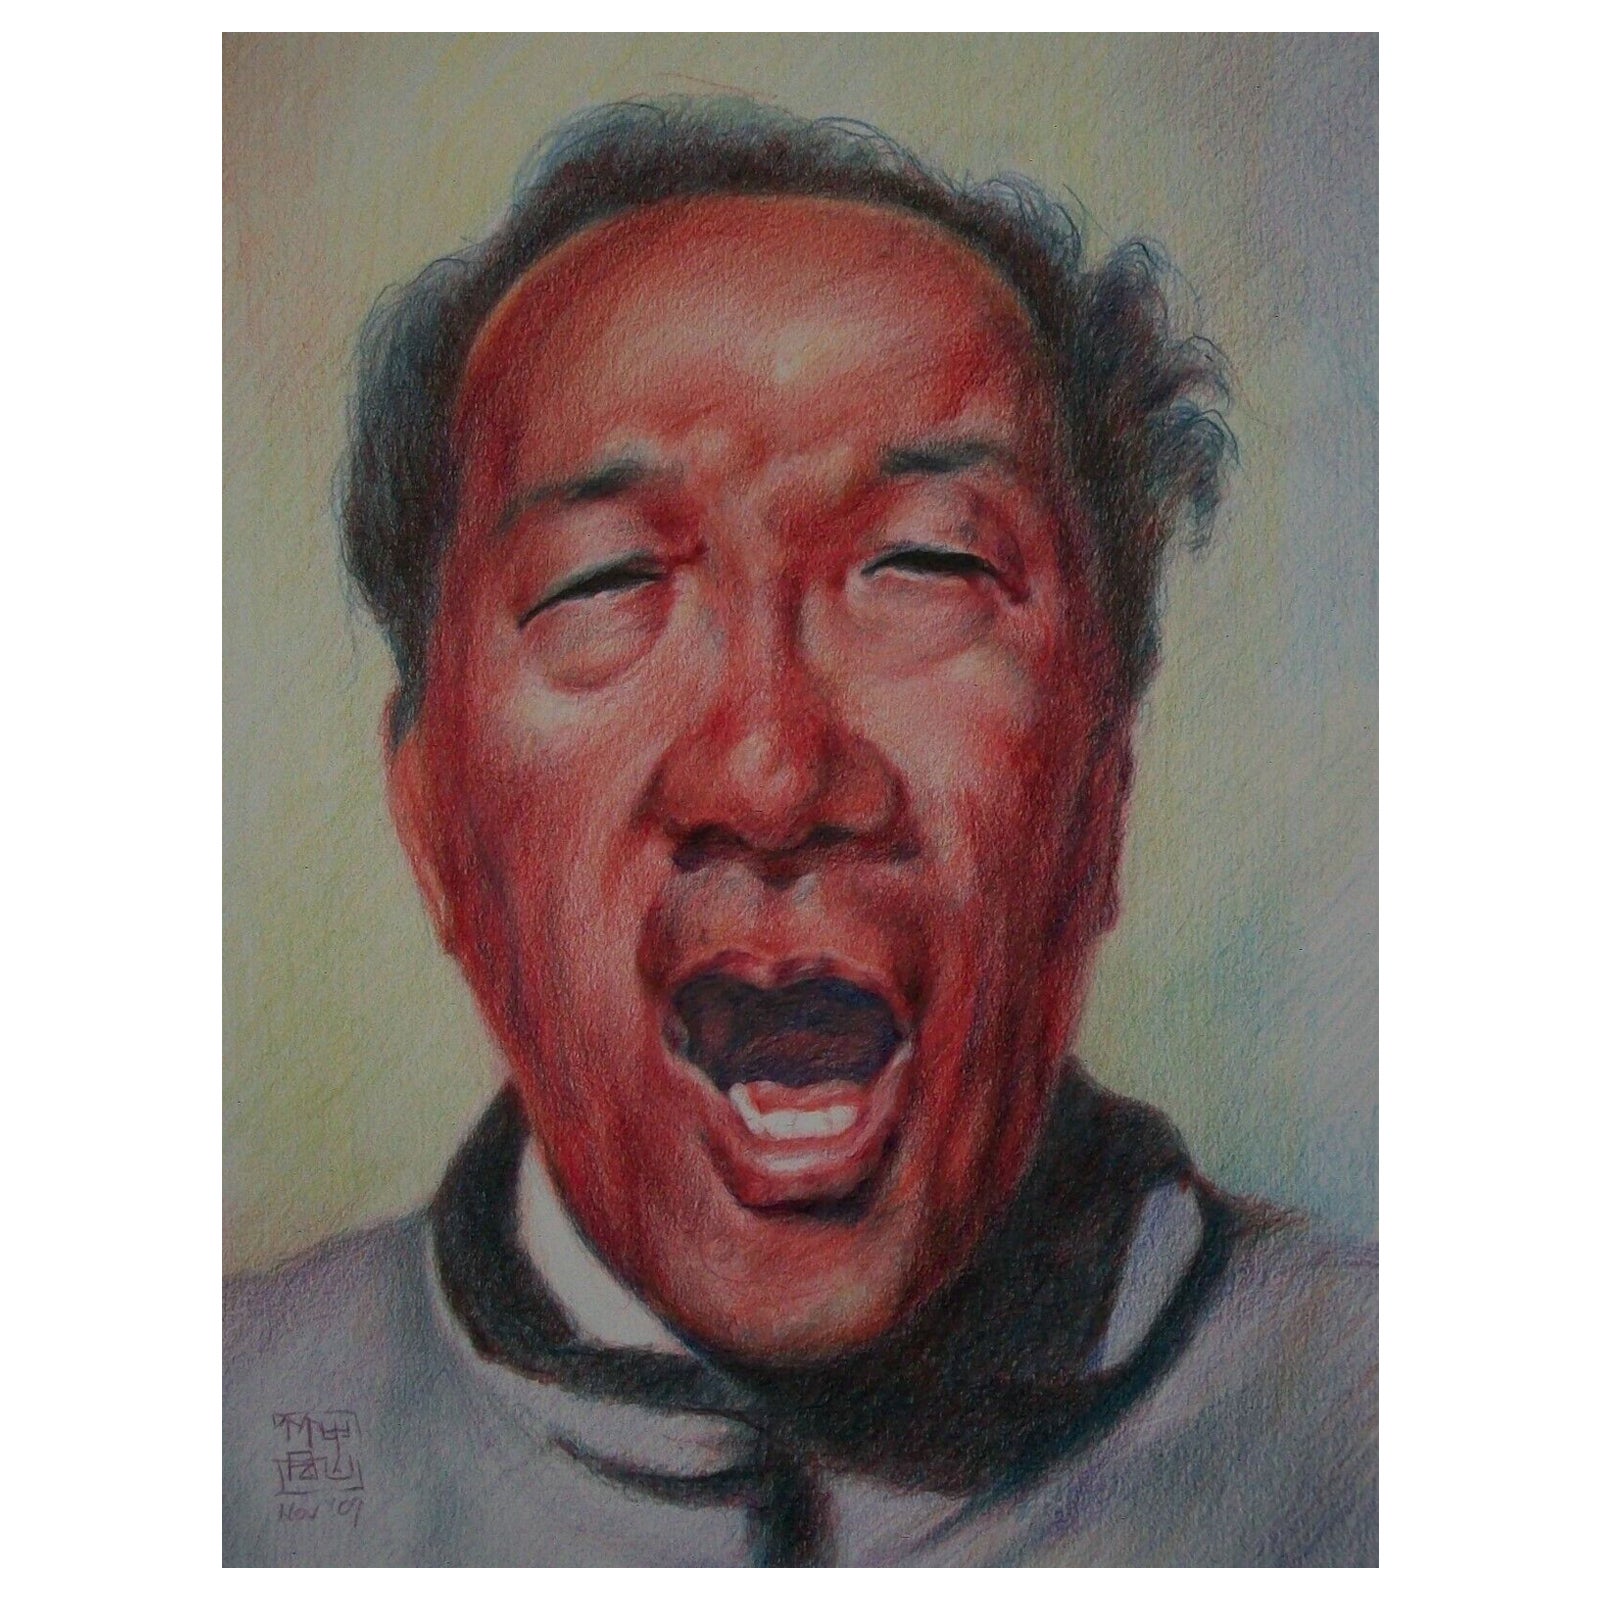 Zeitgenössisches chinesisches Avantgarde-Bleistiftporträt, signiert, ca. 2007